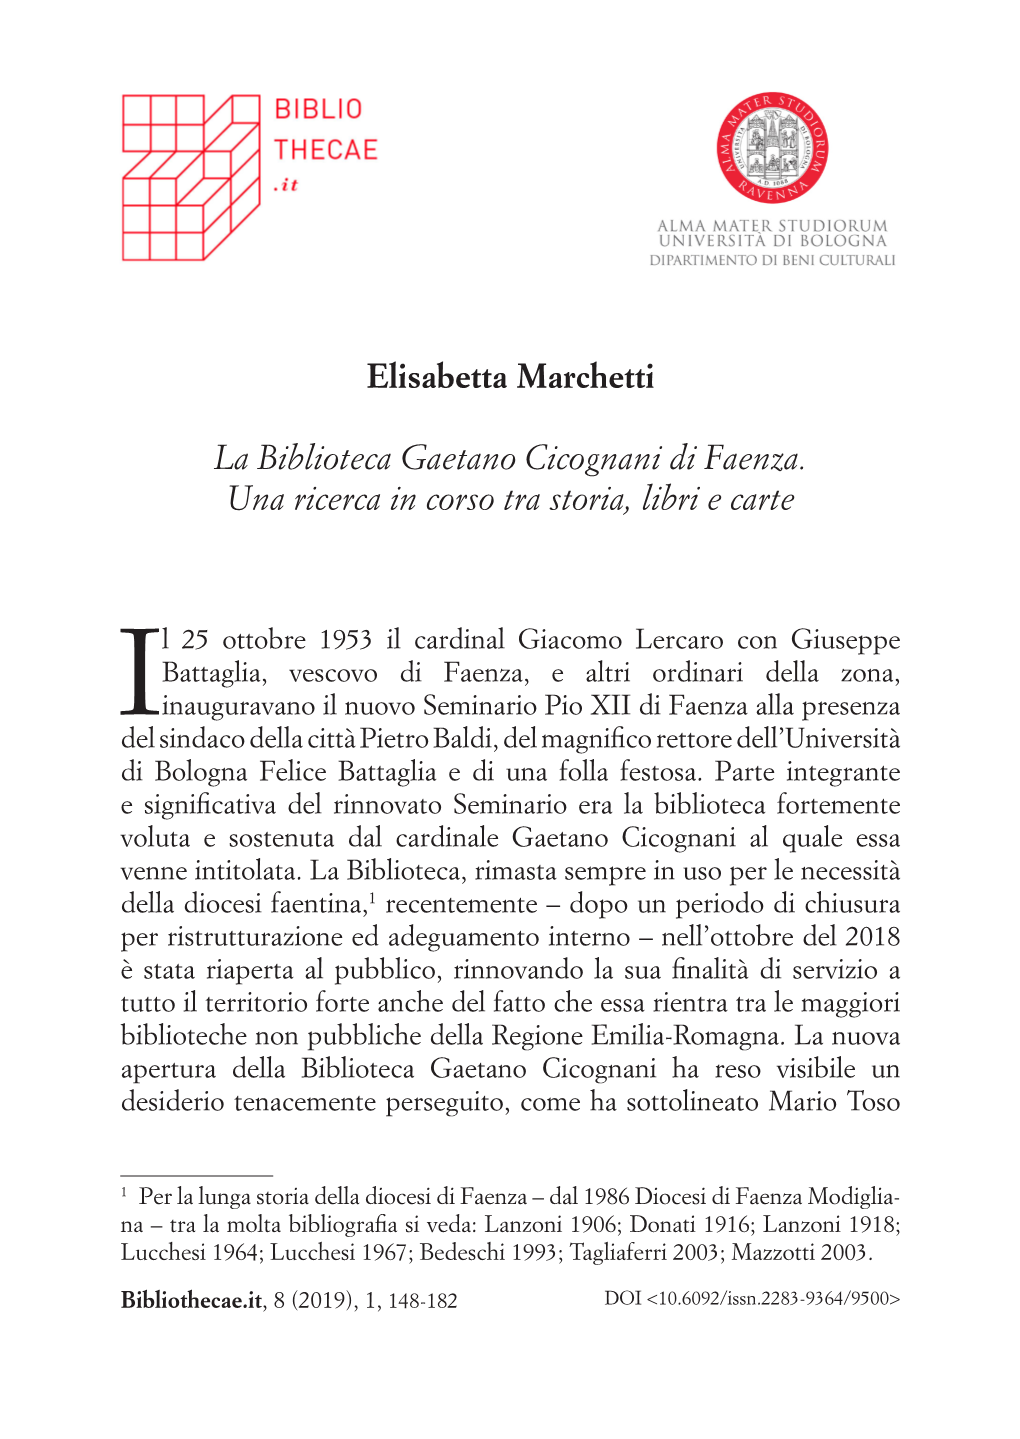 Elisabetta Marchetti La Biblioteca Gaetano Cicognani Di Faenza. Una